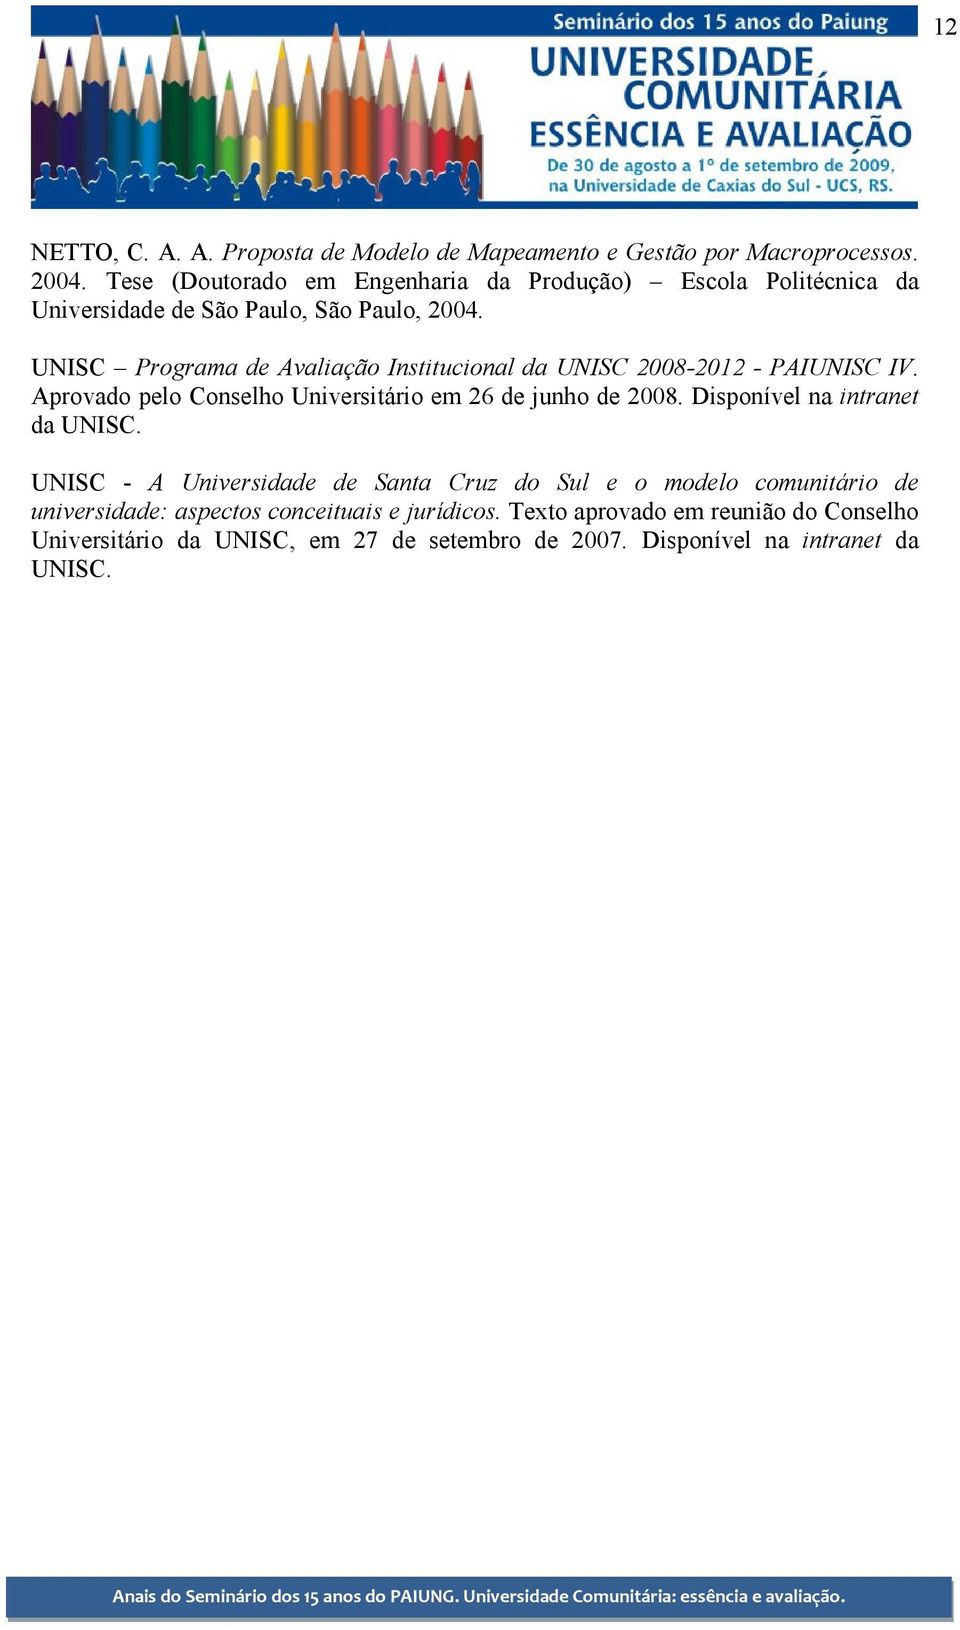 UNISC Programa de Avaliação Institucional da UNISC 2008-2012 - PAIUNISC IV. Aprovado pelo Conselho Universitário em 26 de junho de 2008.